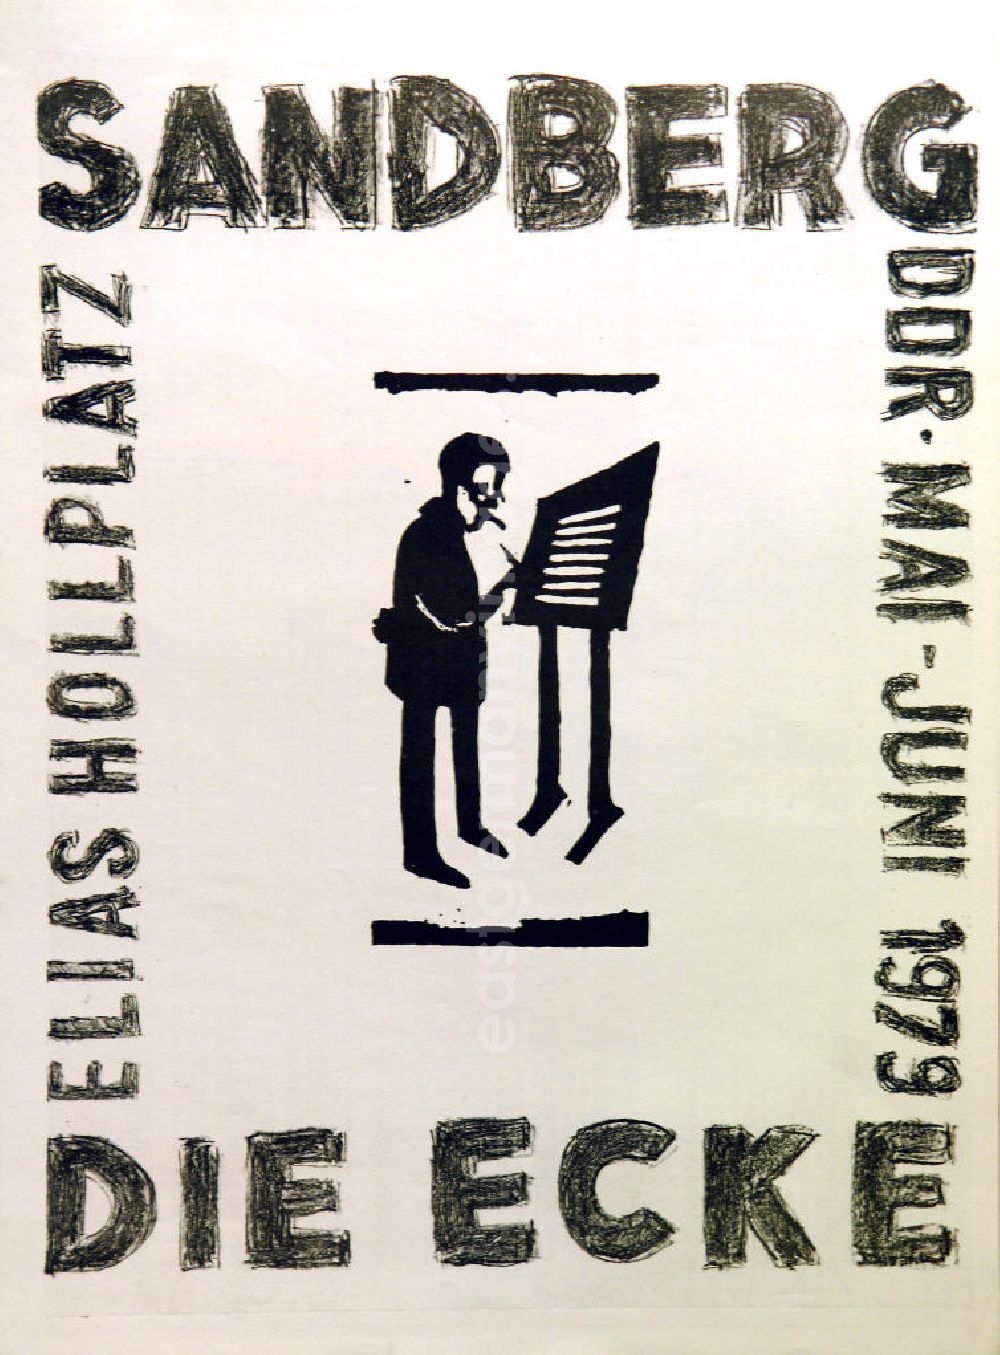 GDR photo archive: Berlin - Plakat der Ausstellung Sandberg DDR, Die Ecke über Herbert Sandberg von Mai-Juni 1979 Elias Hollplatz, 36,